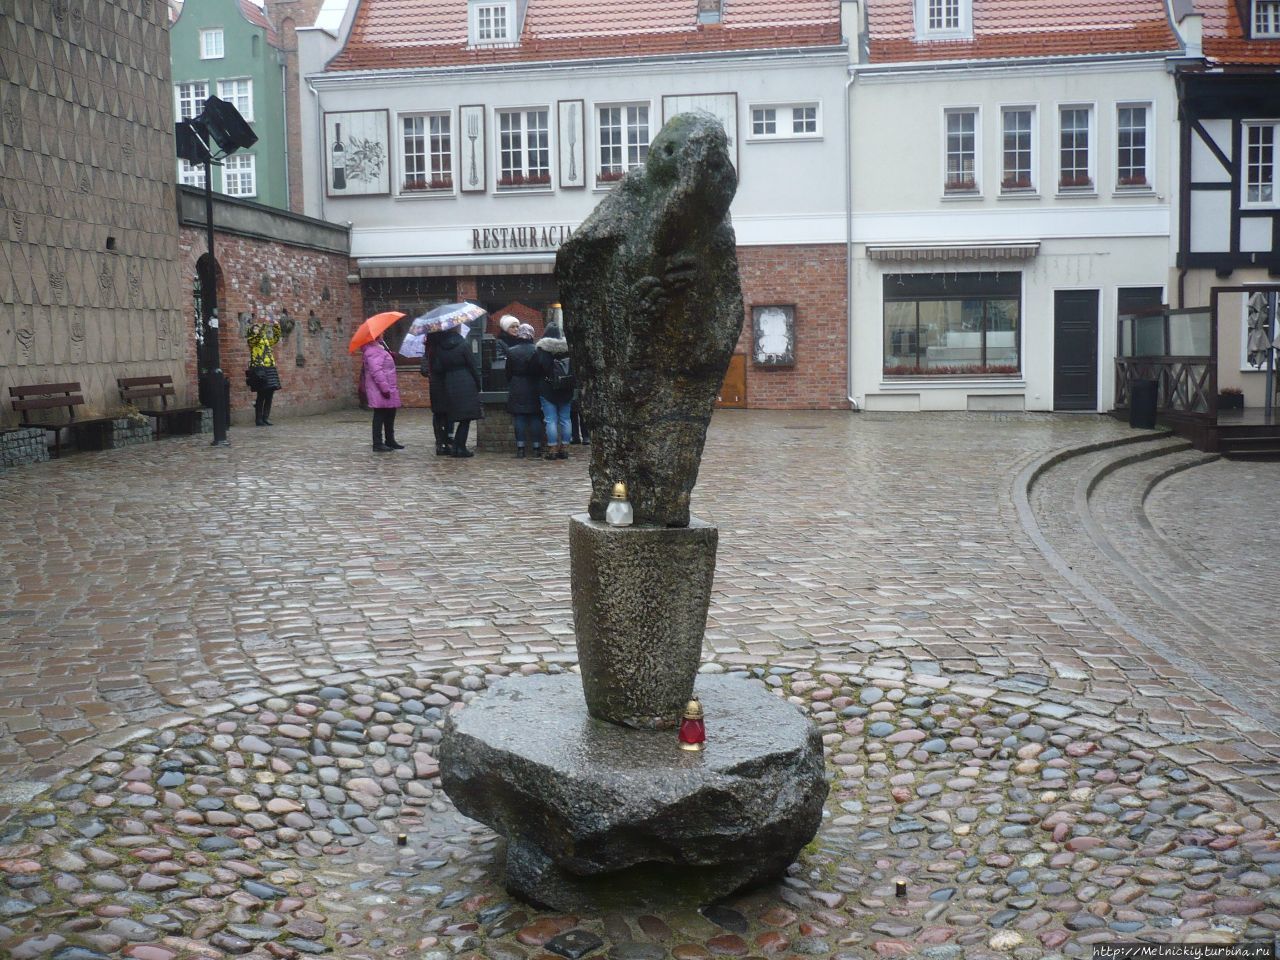 Пасхальная прогулка по старинному городу в дождливый день Гданьск, Польша